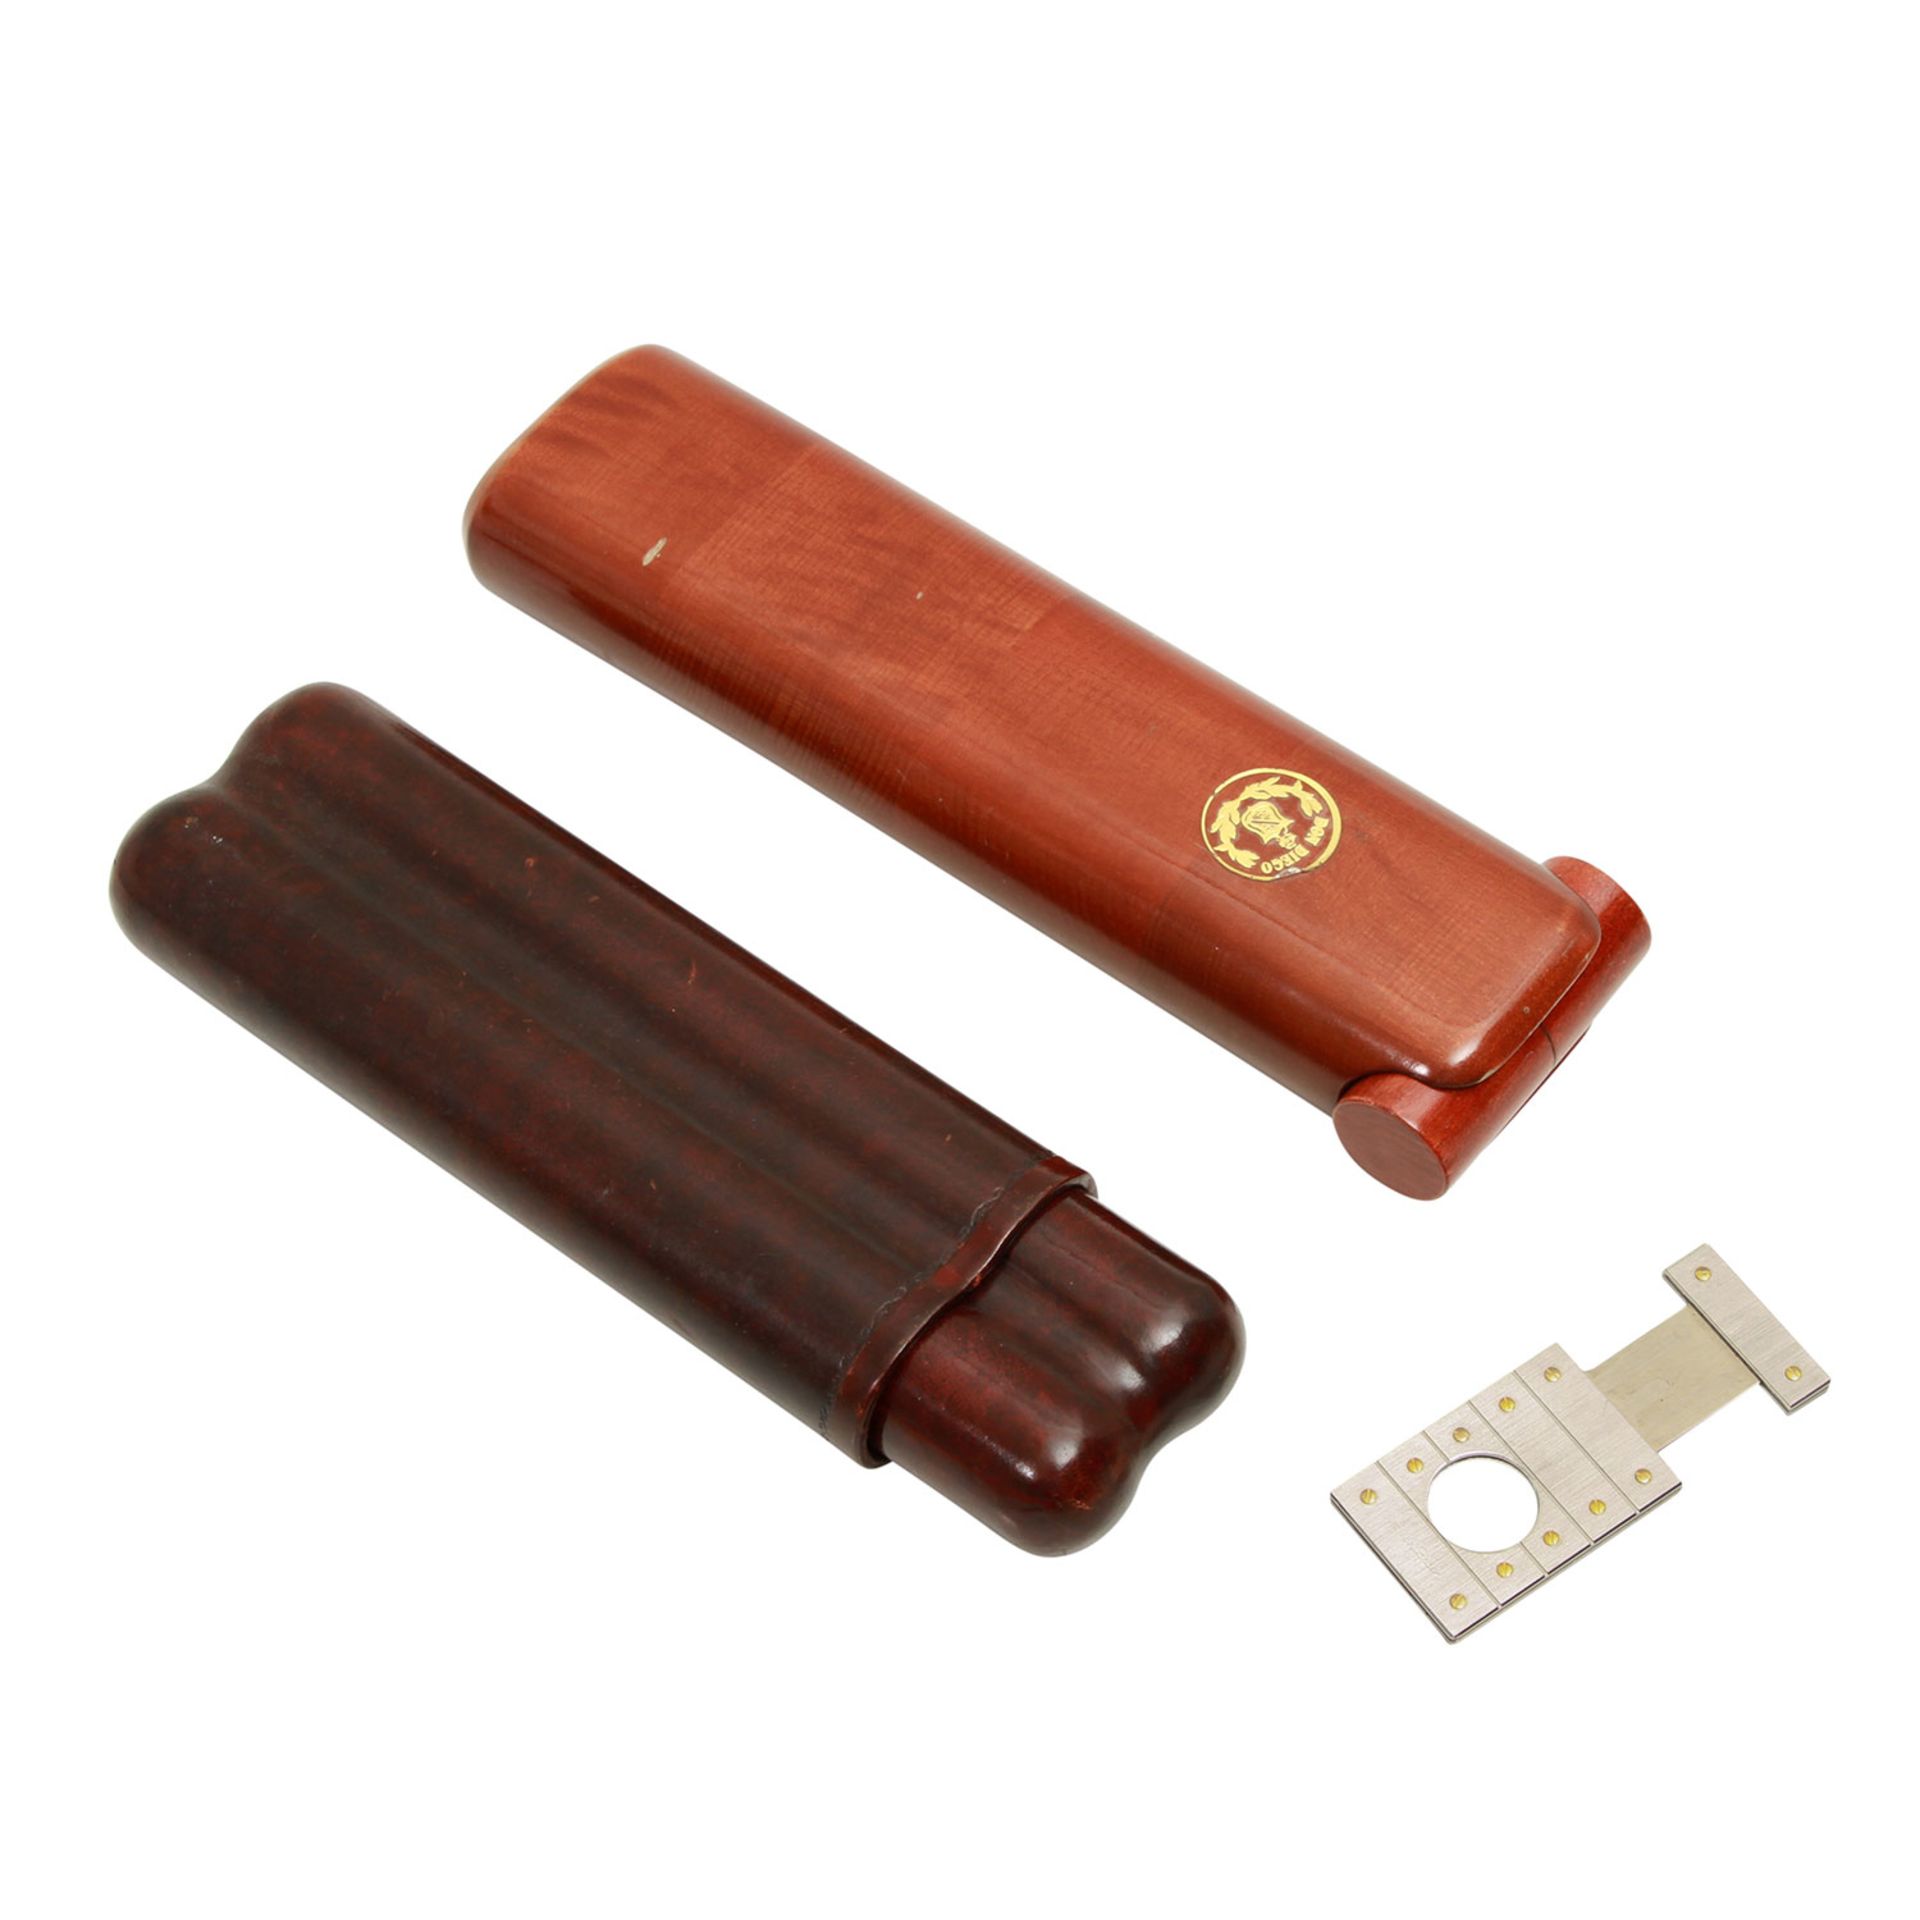 CARTIER Zigarrenschneider dazu 2 Zigarrenetuis(nicht Cartier) in Braun. Gebrauchsspuren, kleine